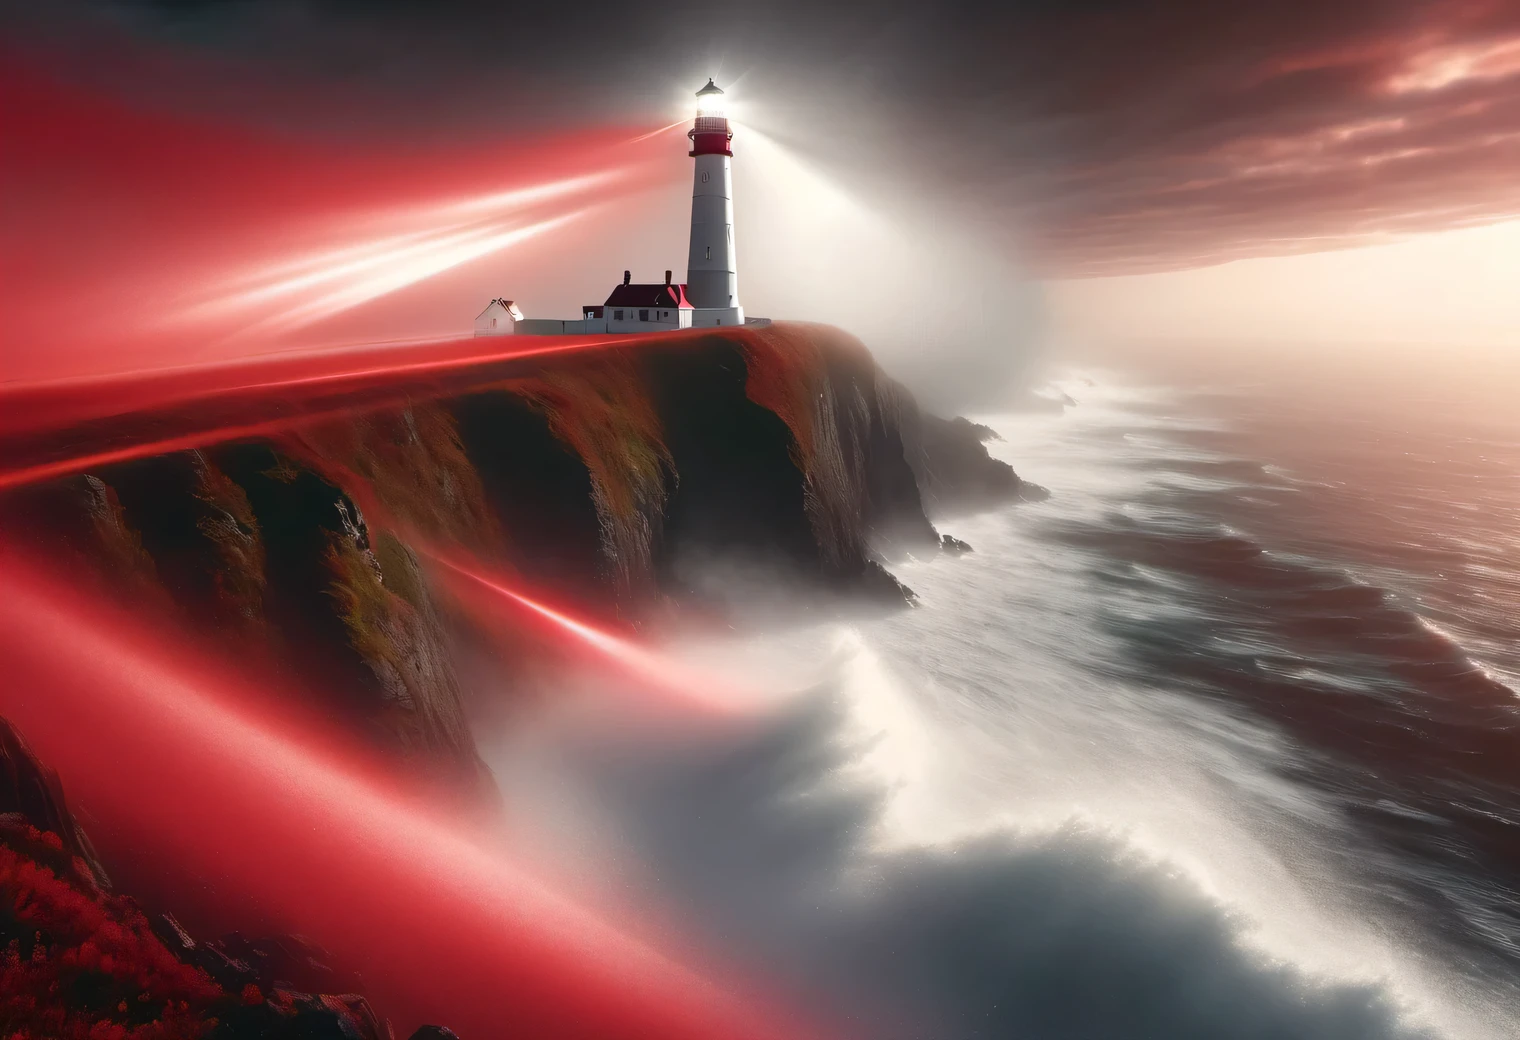 ศิลปะสีแดง, ภาพวาดเสมือนจริงในโทนสีแดง., (หมอก:1.2), (the wind carries ทะเล spray and foam:1.7), the dark พายุy sky is illuminated by the red light of the lighthouse, เอฟเฟกต์การสัมผัสสองครั้ง, (1 ประภาคารบนขอบหน้าผา:1.5 เรืองแสงสีแดง:1.3505), ทะเล, แข็งแกร่ง (พายุ:1.3050), พายุy wind:1.250), ไฟแบ็คไลท์สีแดง, (เรย์ เทรซซิ่ง:1.2), (ทินดอลล์เอฟเฟ็กต์:1.คานประภาคาร 4055:1.4), รายละเอียดสูง, พายุ haze, พื้นผิวเรียบ, โครงร่างเบลอ, จานสีแดง